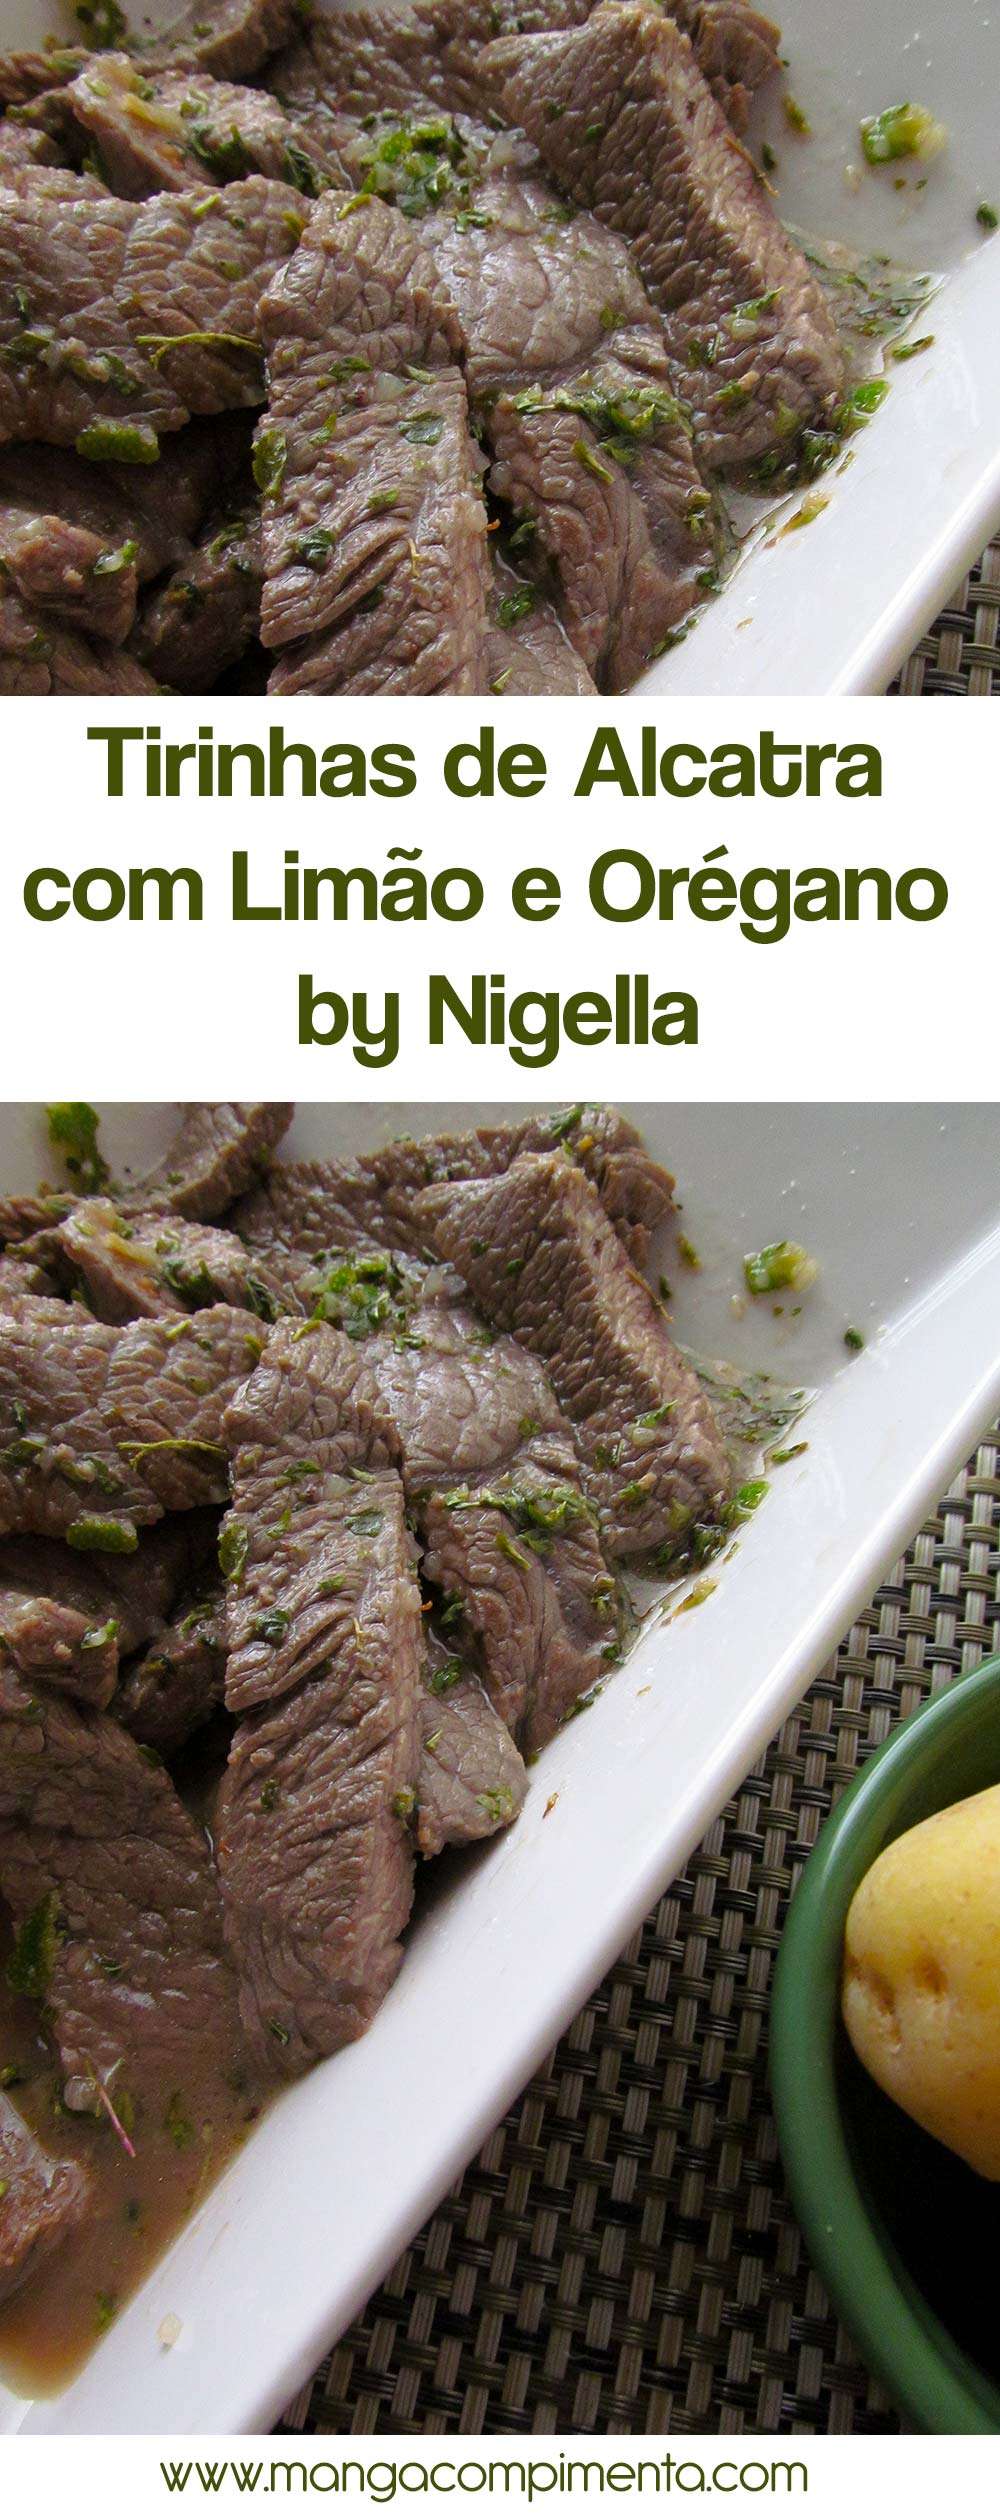 Tirinhas de Alcatra com Limão e Orégano by Nigella - perfeito para beliscar em dias quentes!